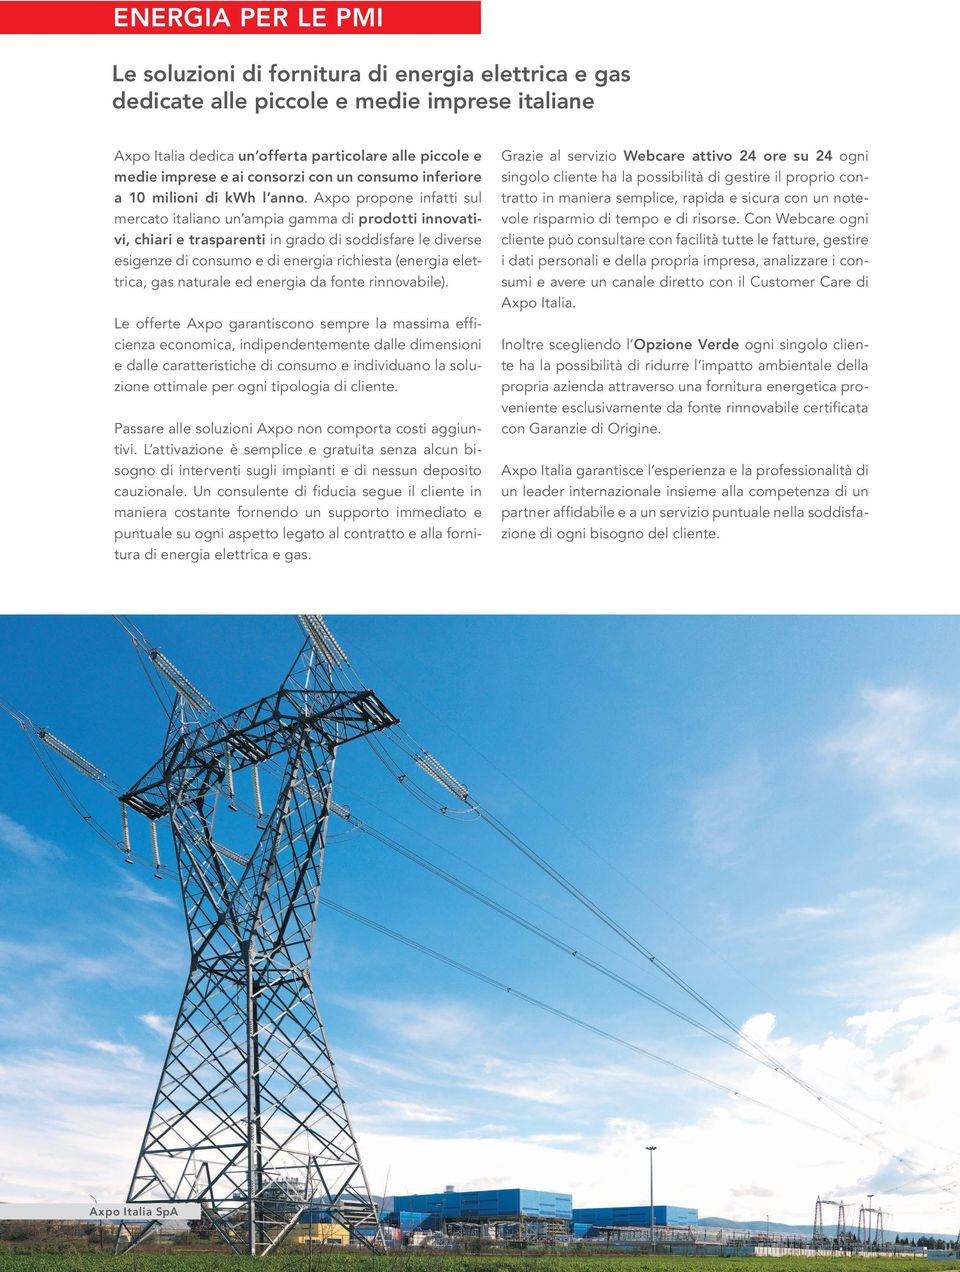 Axpo propone infatti sul mercato italiano un ampia gamma di prodotti innovativi, chiari e trasparenti in grado di soddisfare le diverse esigenze di consumo e di energia richiesta (energia elettrica,